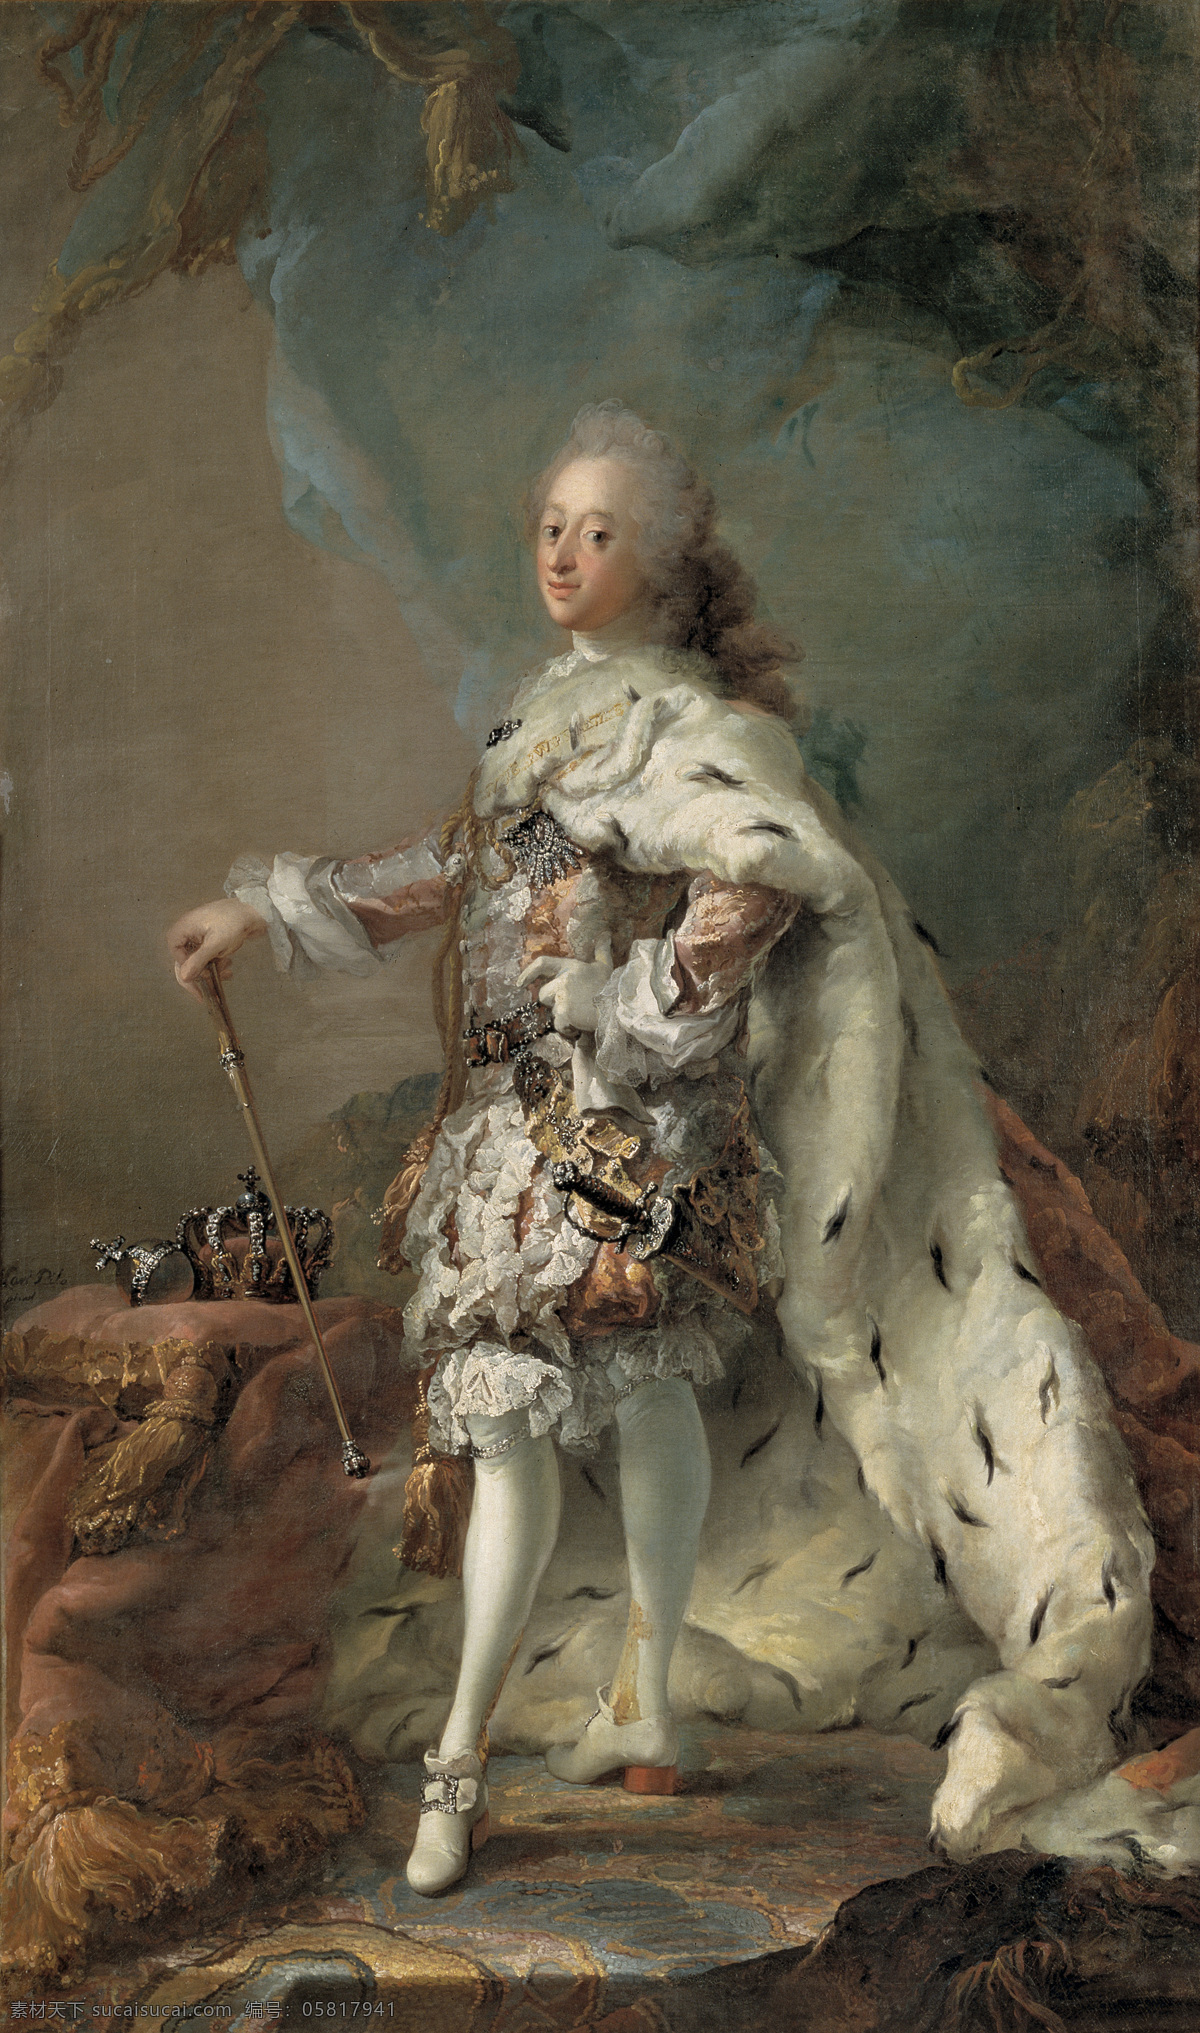 腓烈特五世 丹麦国王 克里斯蒂安 六世 布兰 登堡 库姆 巴赫 索菲娅 长子 七 世 父 油画 绘画书法 文化艺术